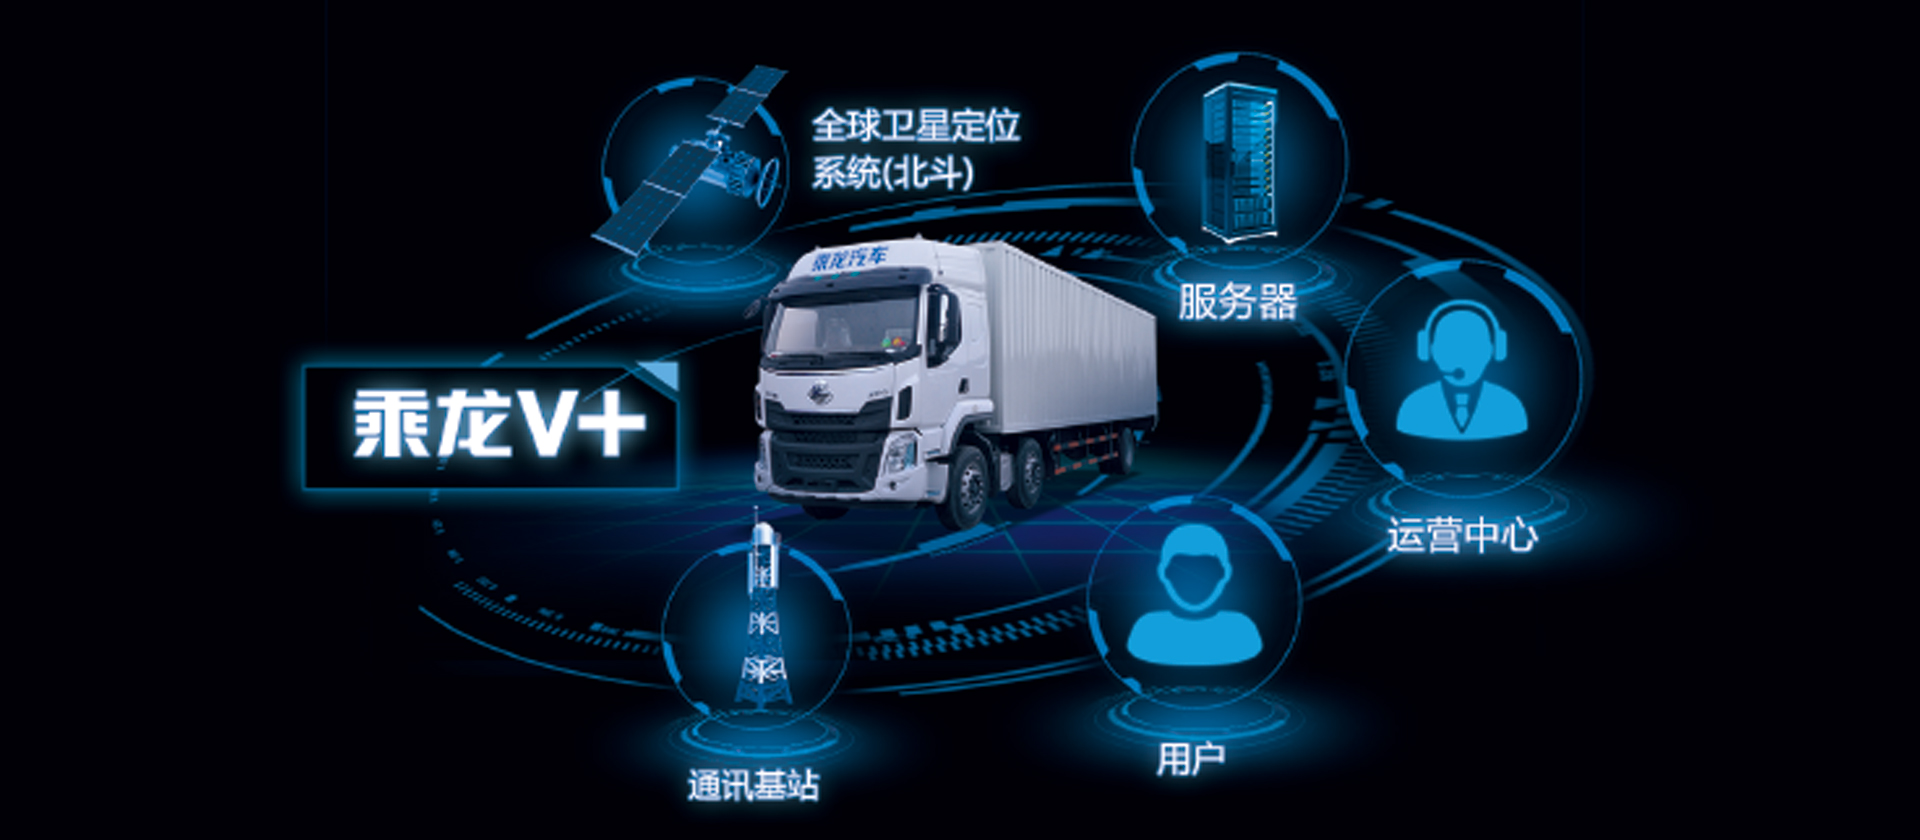 H5牵引车 全新开发乘龙V+车联网系统，智能卡车，十大功能帮助改善驾驶行为50%，降低车辆7%-10%油耗，提升20%出勤率和配货率